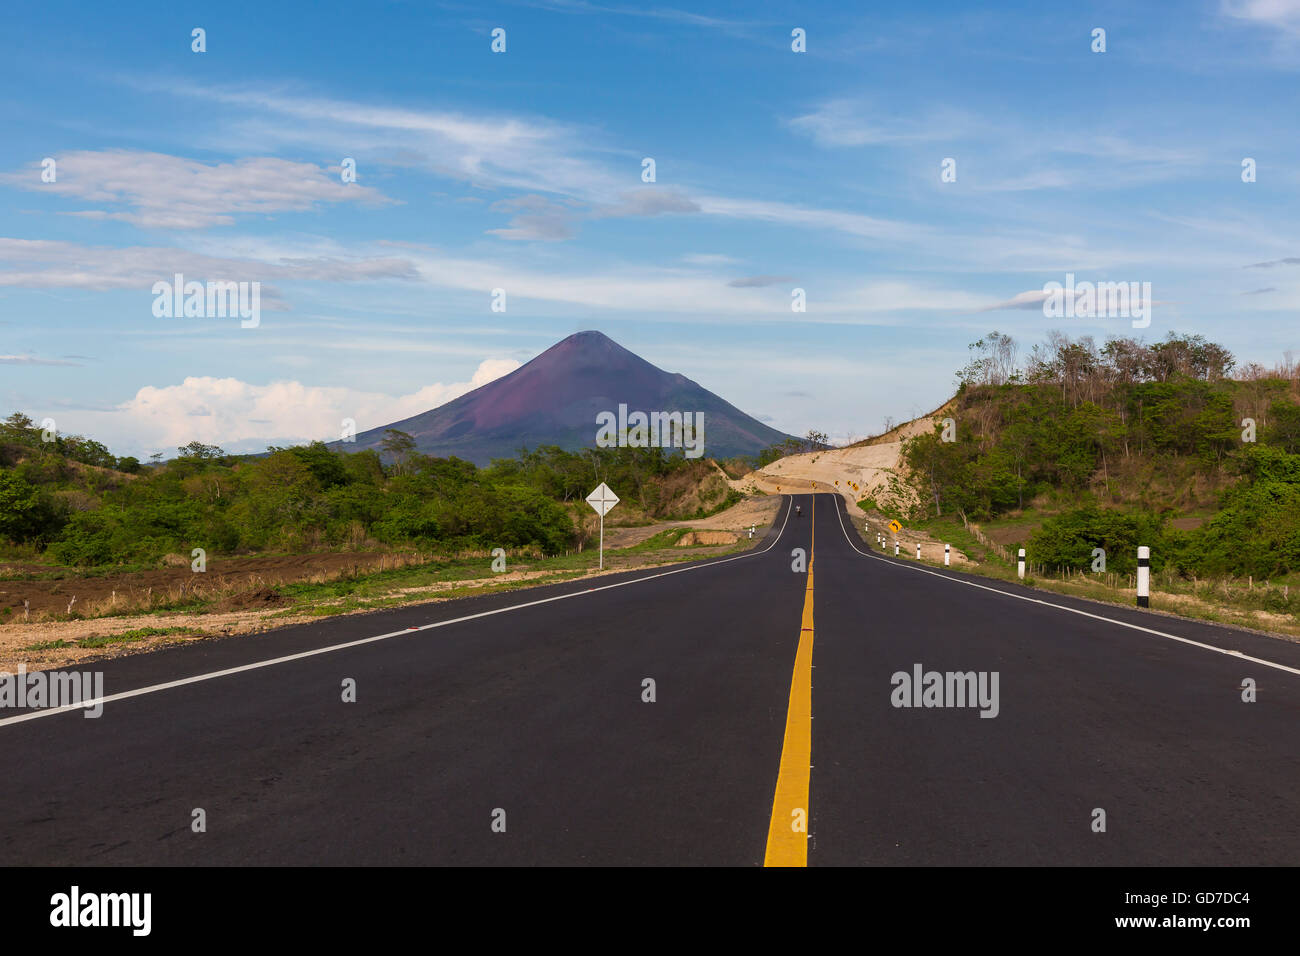 Nueva carretera escénica con una fantástica vista del Volcán Momotombo, Nicaragua Foto de stock